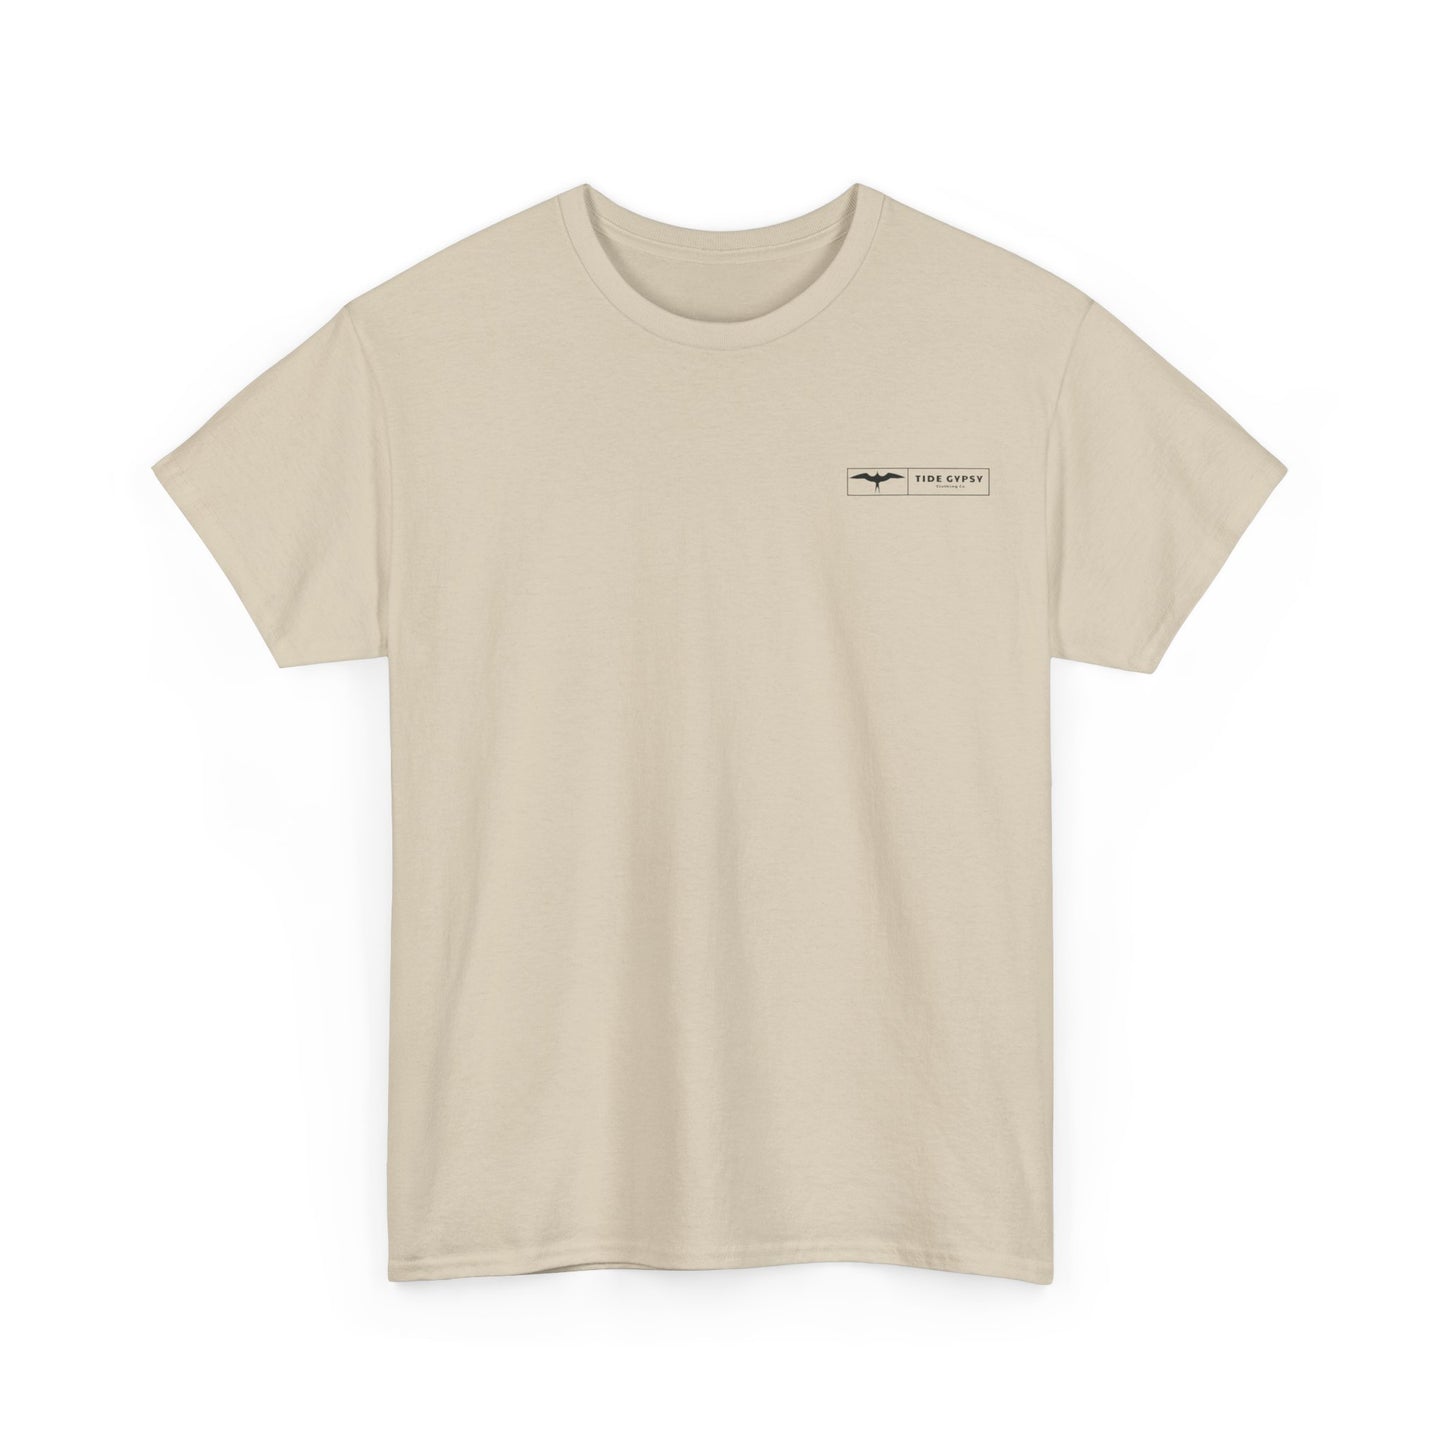 Condor of the Ocean T-shirt